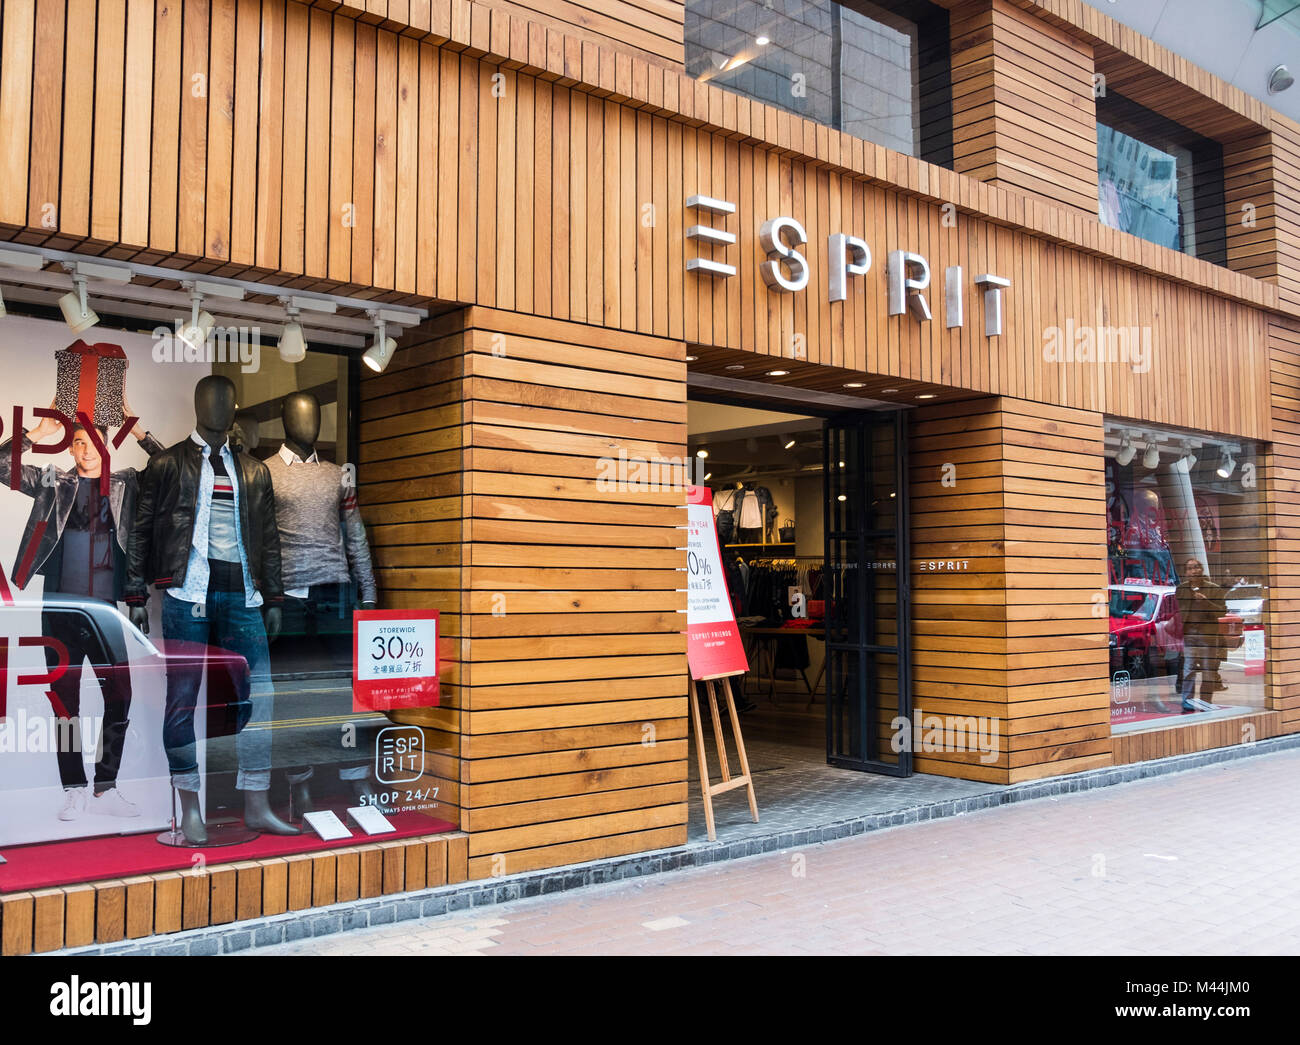 Hong Kong - Febrero 11, Esprit tienda en Hong Kong. Esprit un fabricante de ropa, calzado, accesorios, joyería Fotografía de stock - Alamy